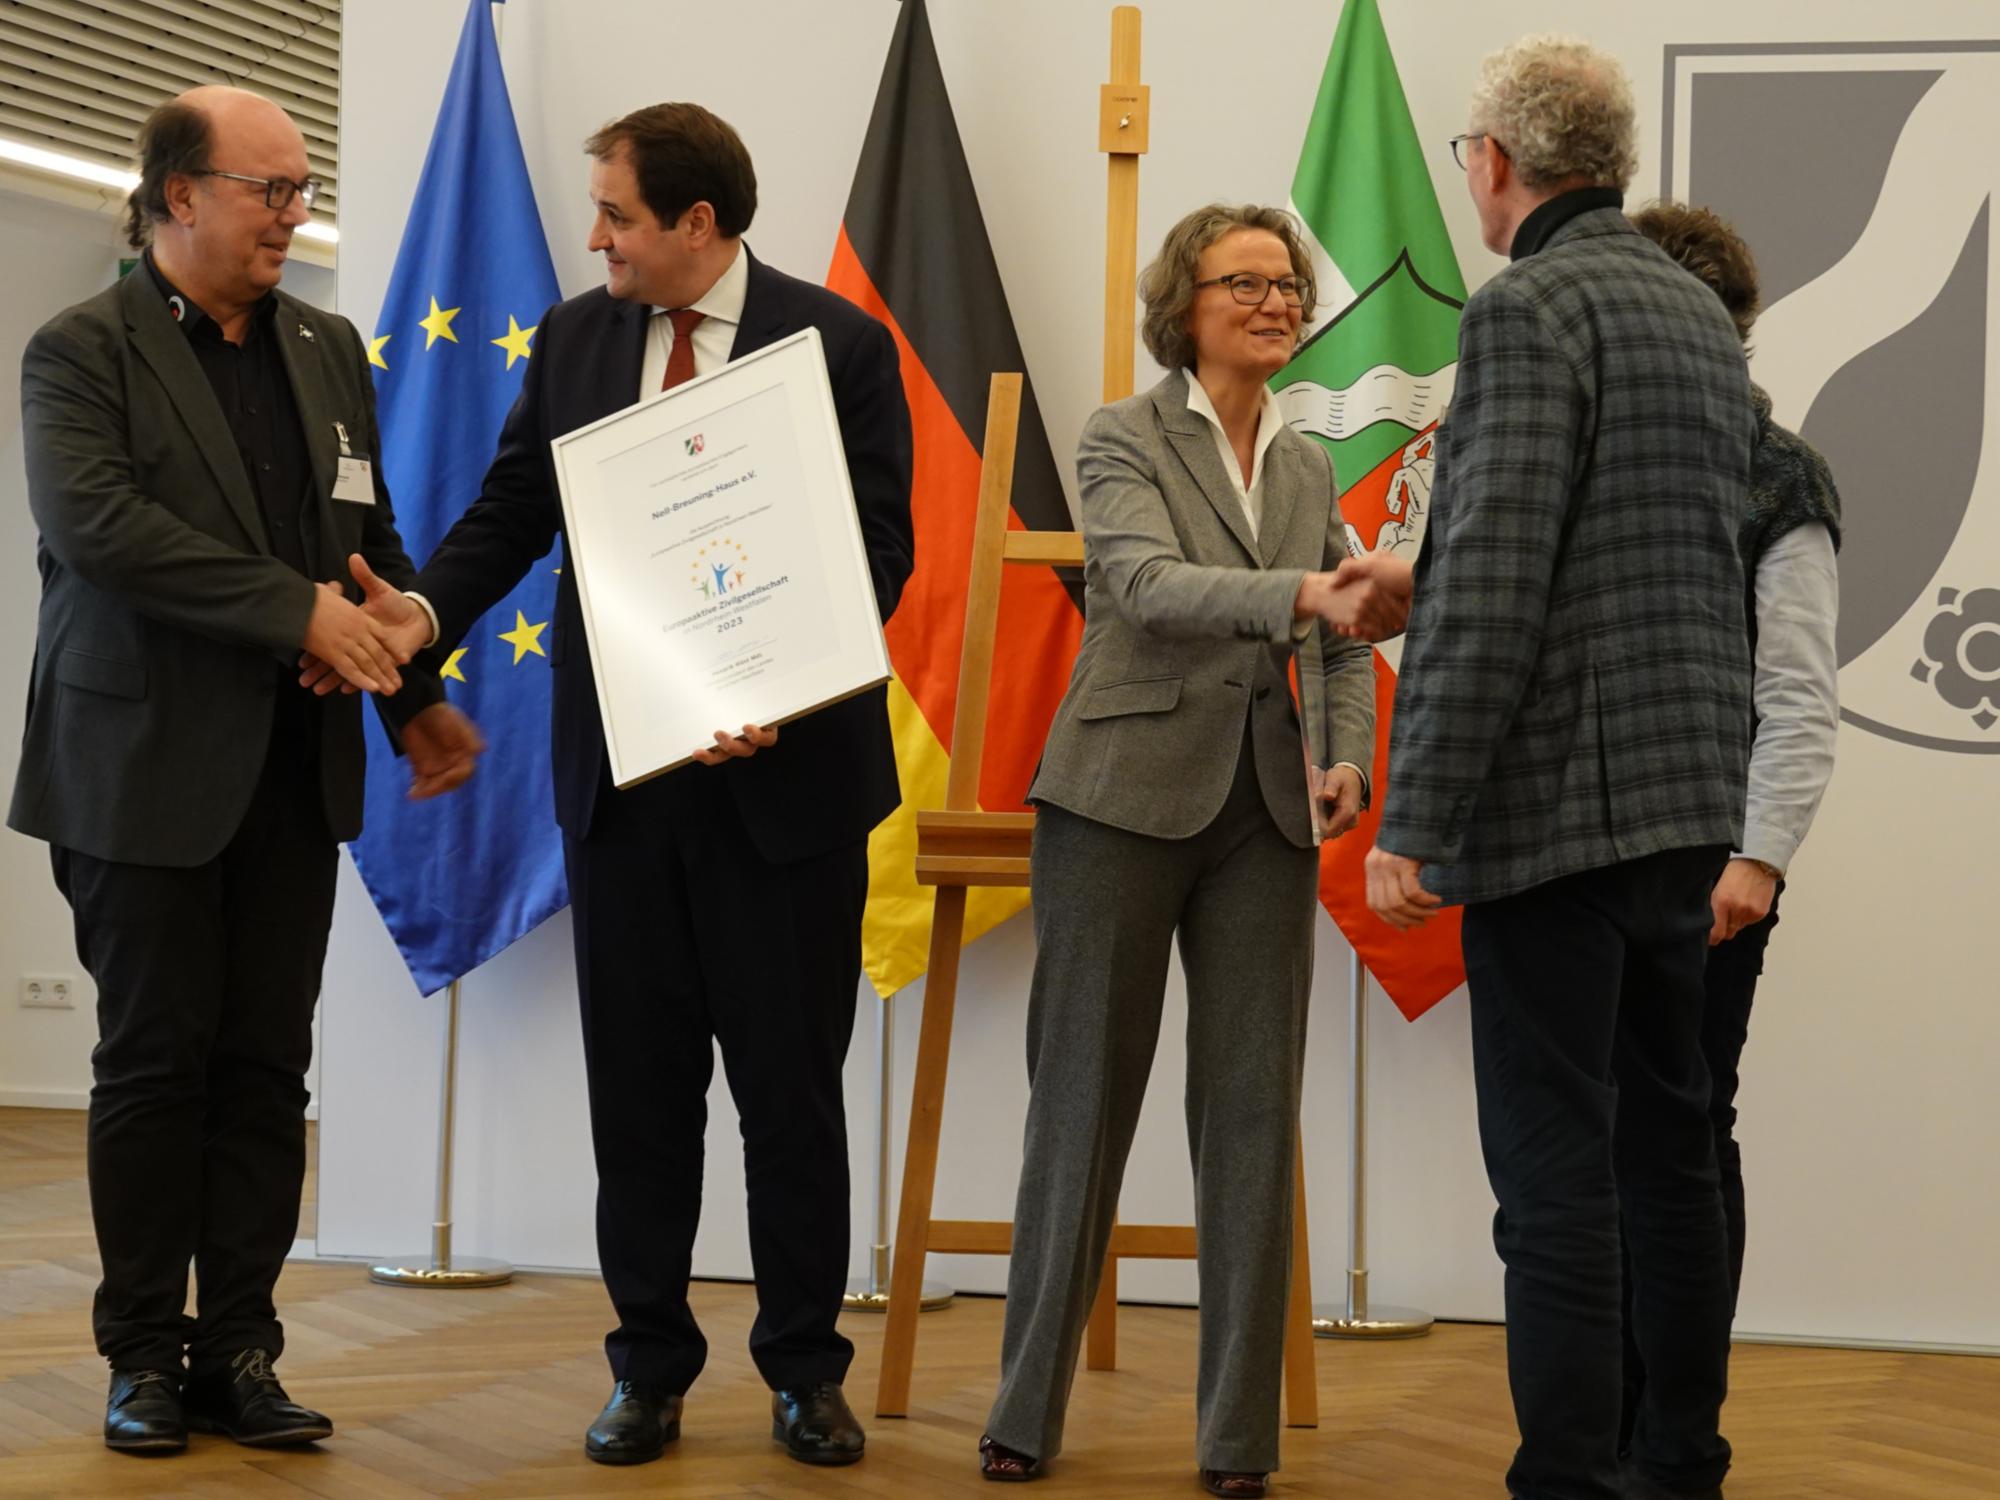 Der Moment der Auszeichnung: Europaminister Nathanael Liminski und Kommunalministerin Ina Scharrenbach gratulierten und überreichten die Urkunde.